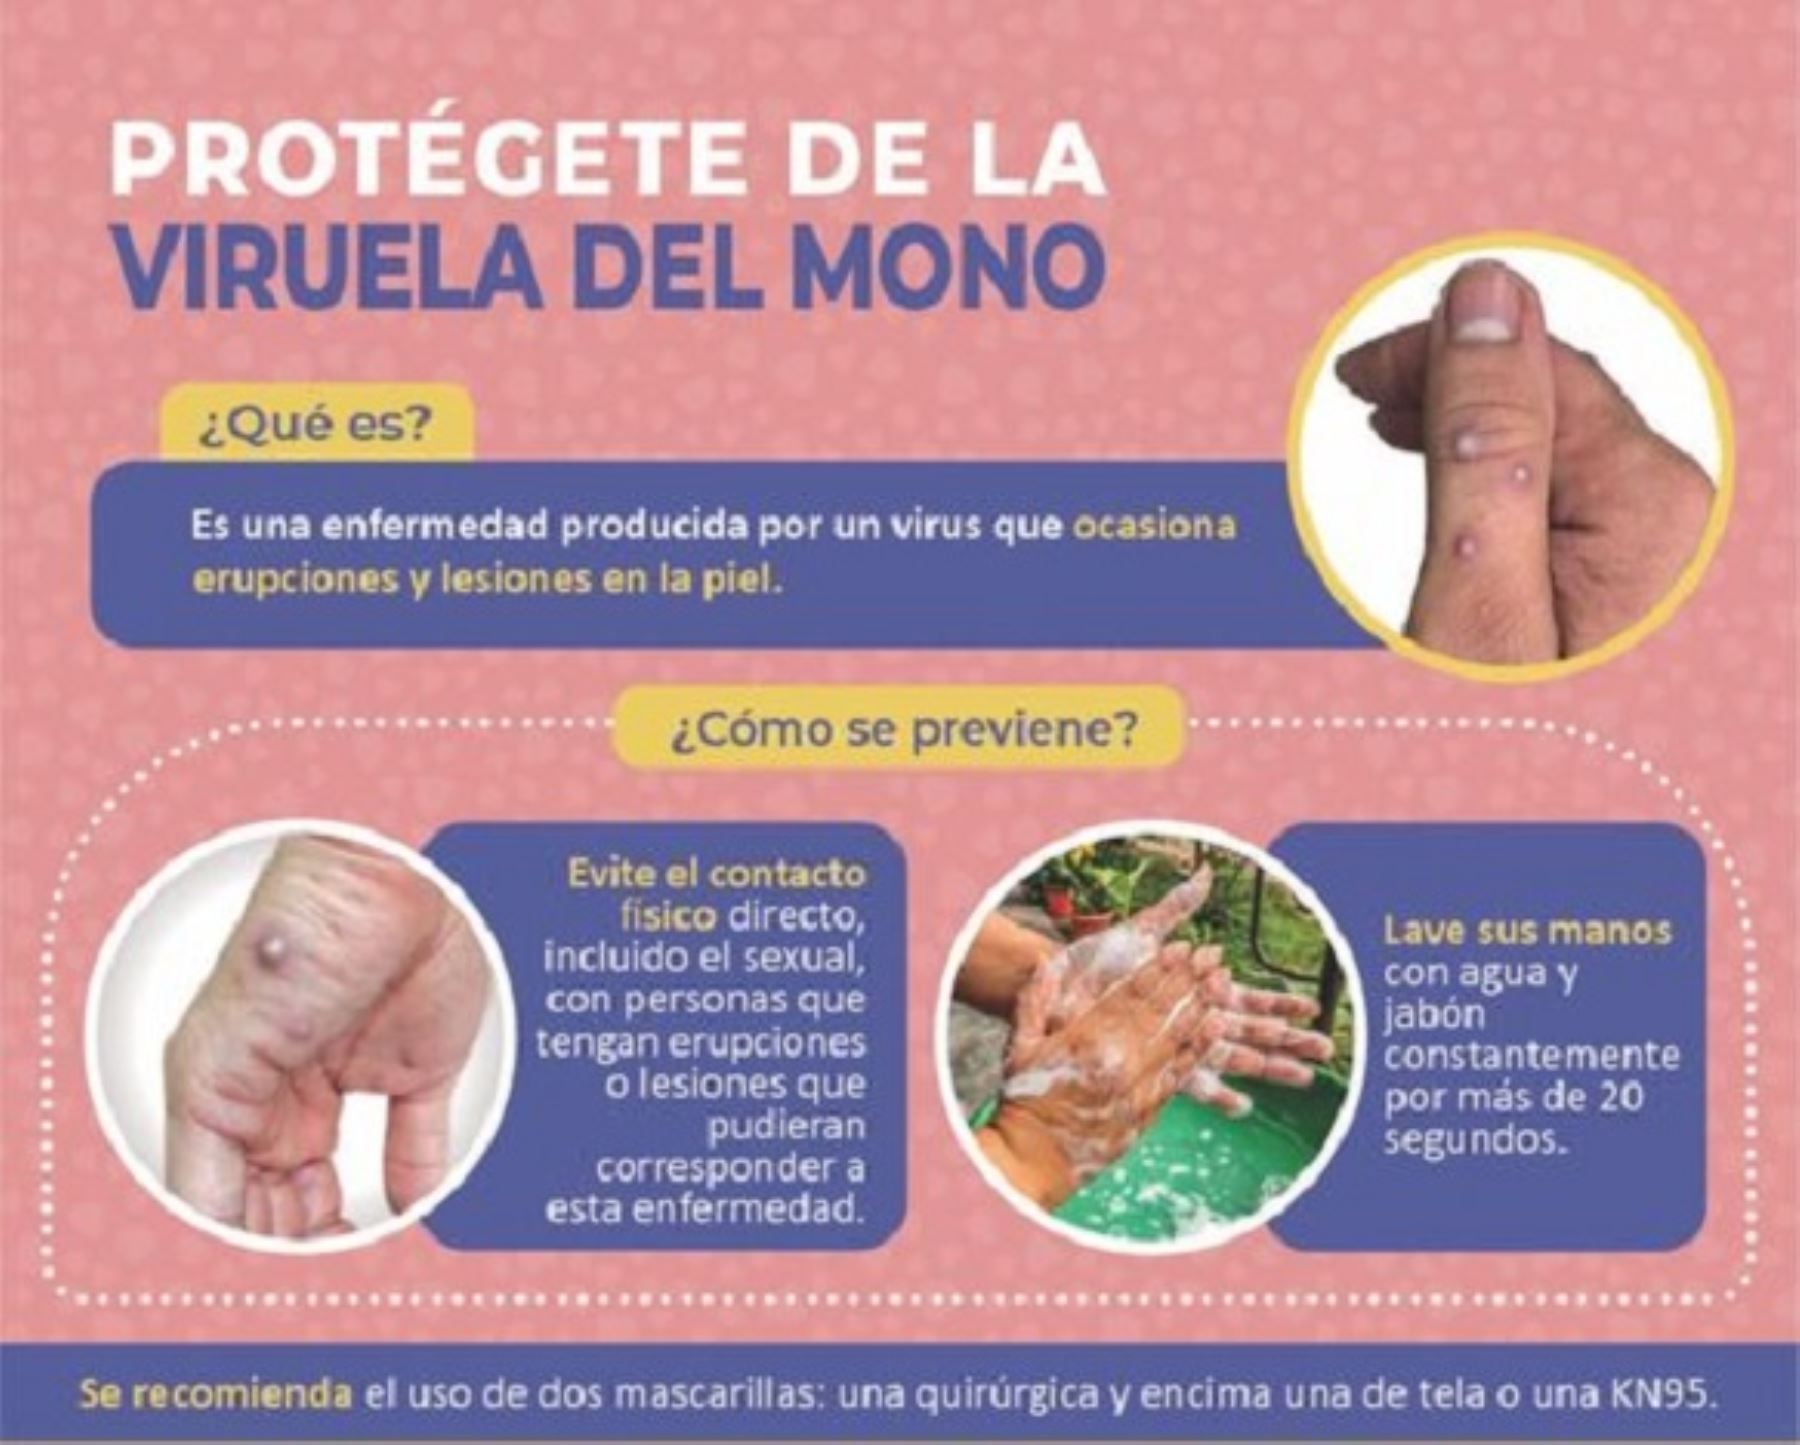 Instituto Nacional de Salud descarta casos de viruela del mono en la región Arequipa. Los tres casos sospechosos dieron negativo a la enfermedad.